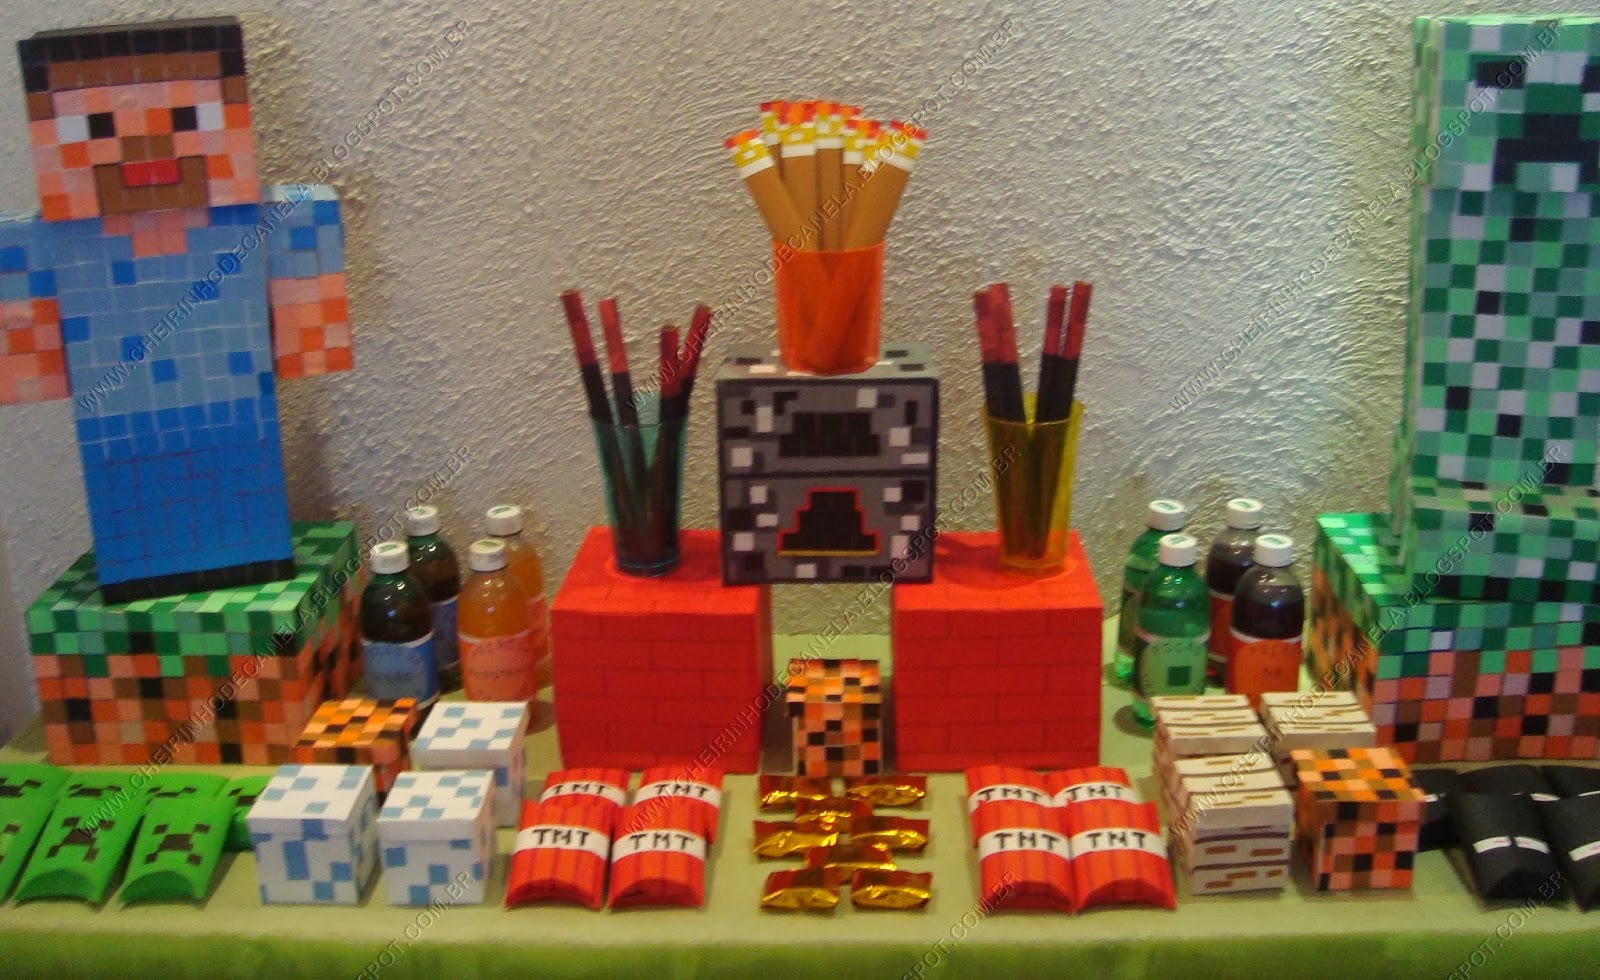 como fazer boneco minecraft passo a passo  Minecraft, Festa minecraft  simples, Mine craft party